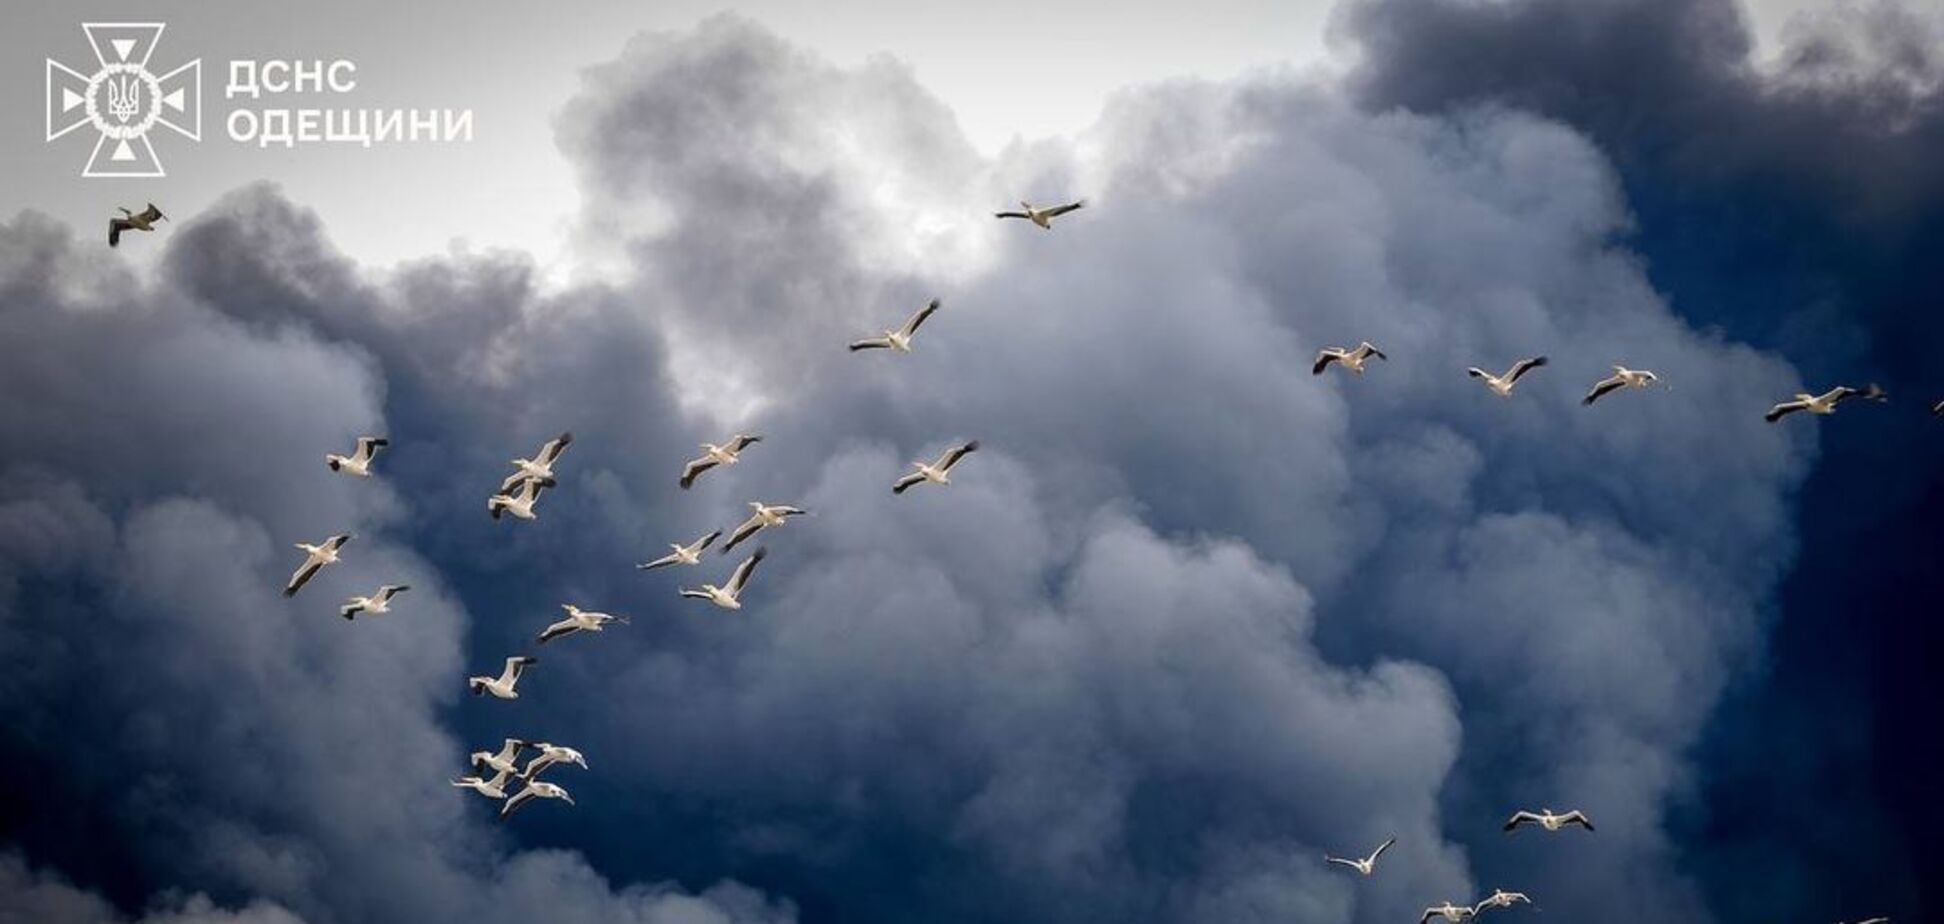 Природа также страдает от войны. Фото пеликанов, летящих сквозь дым от ракетных обстрелов Одесской области, растрогало сеть